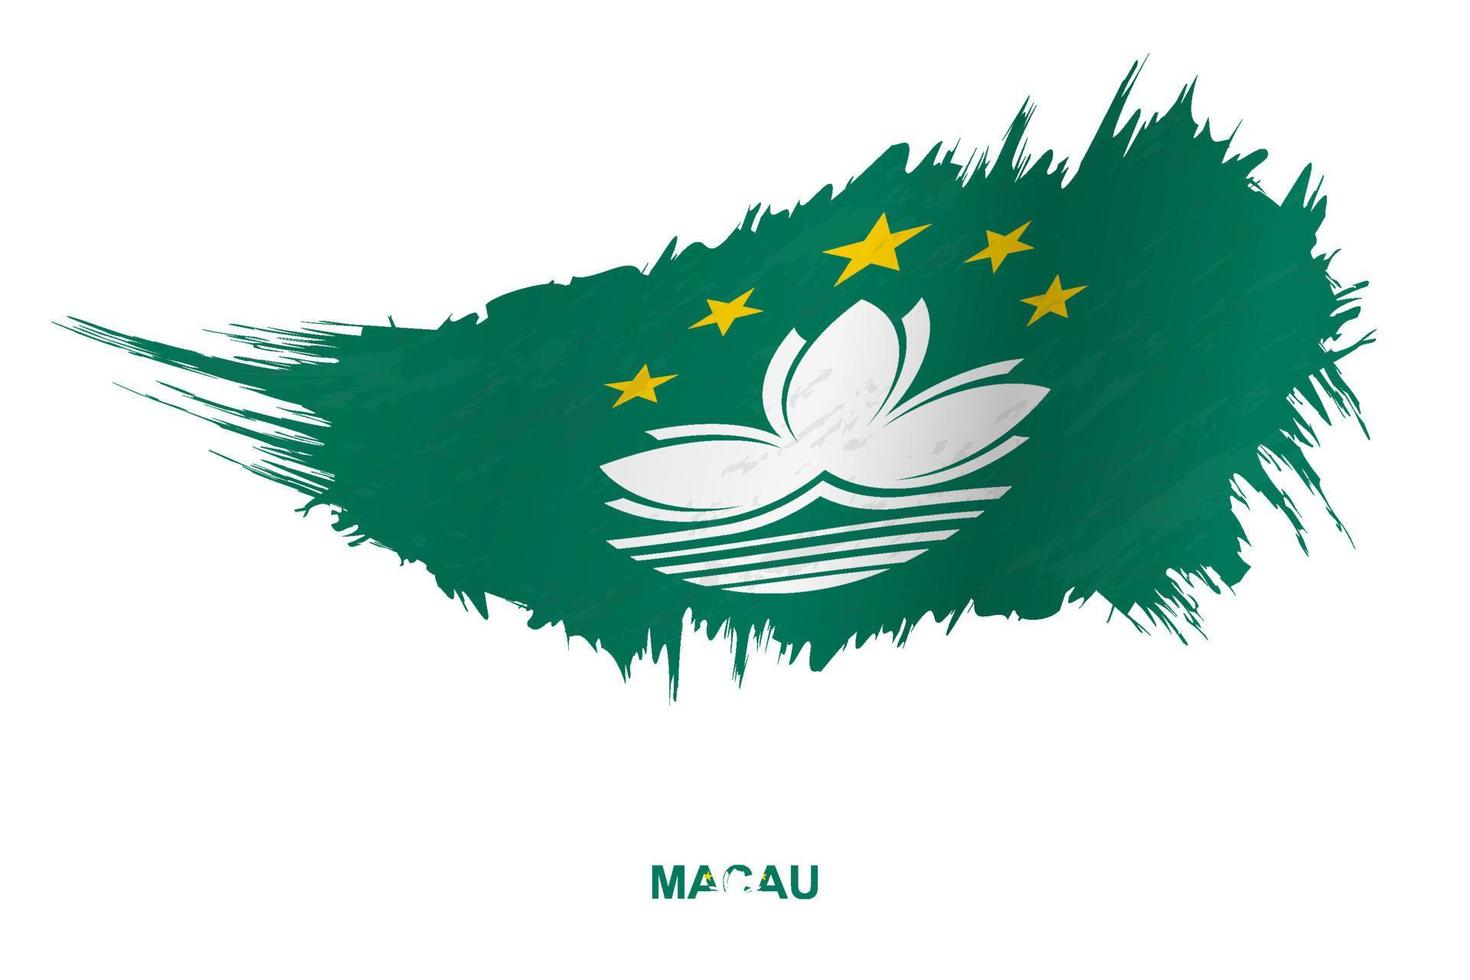 drapeau de macao dans un style grunge avec effet ondulant. vecteur